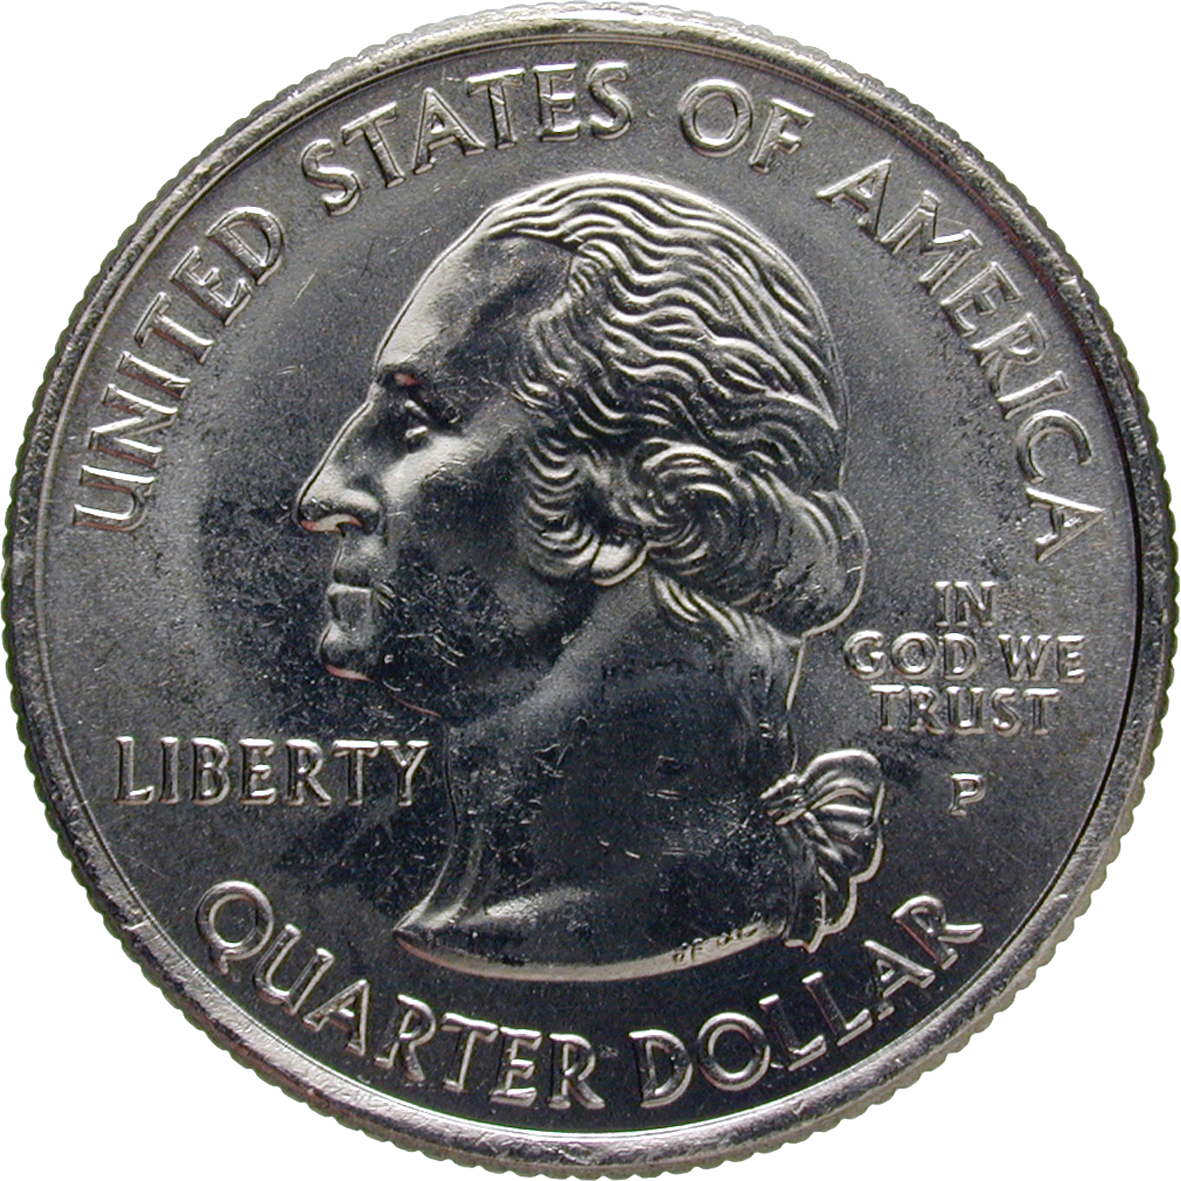 Vereinigte Staaten von Amerika, Quarter Dollar 2006 (obverse)